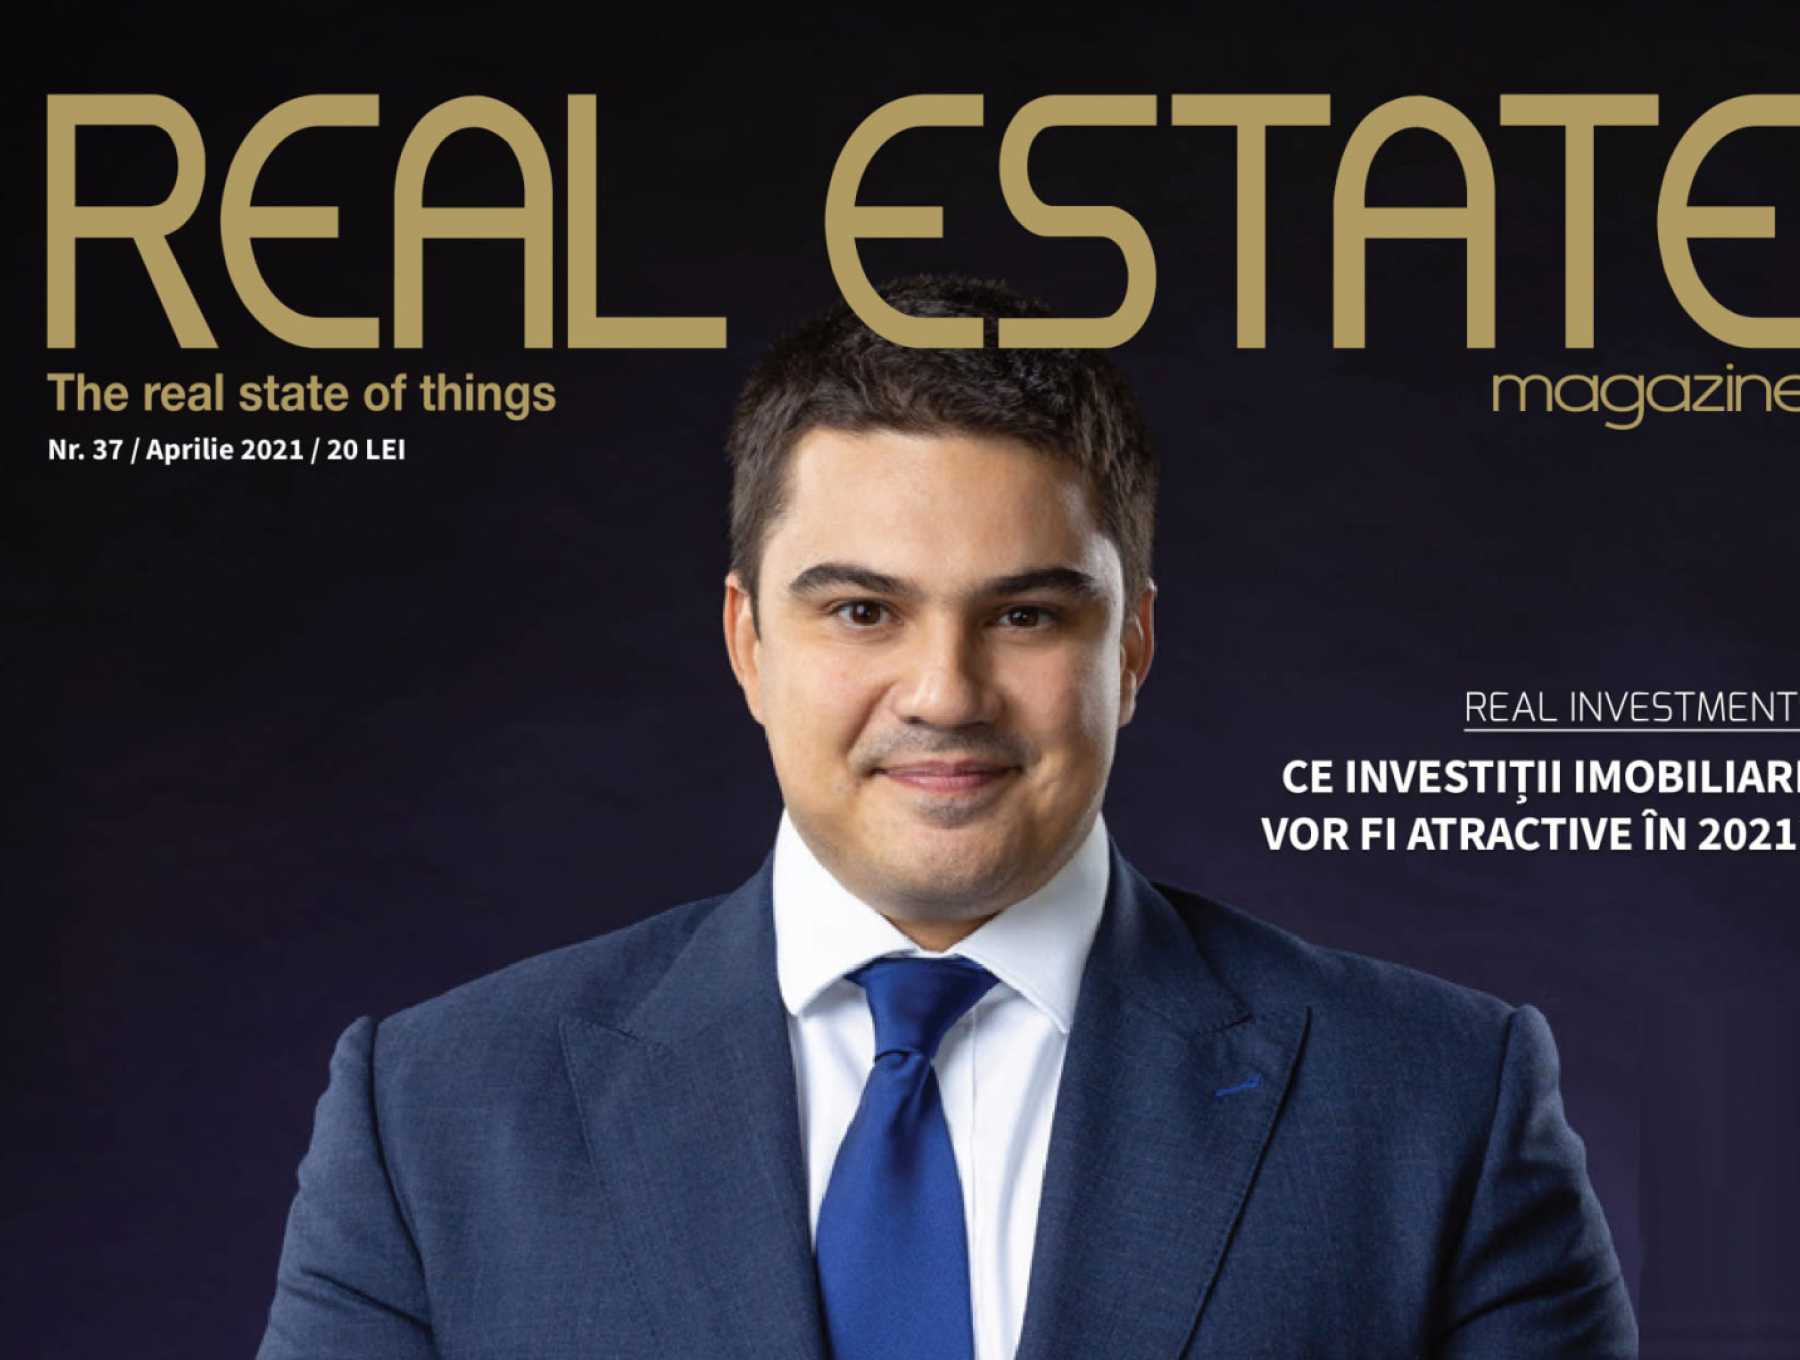 Mihai Păduroiu on the cover of Real Estate Magazine